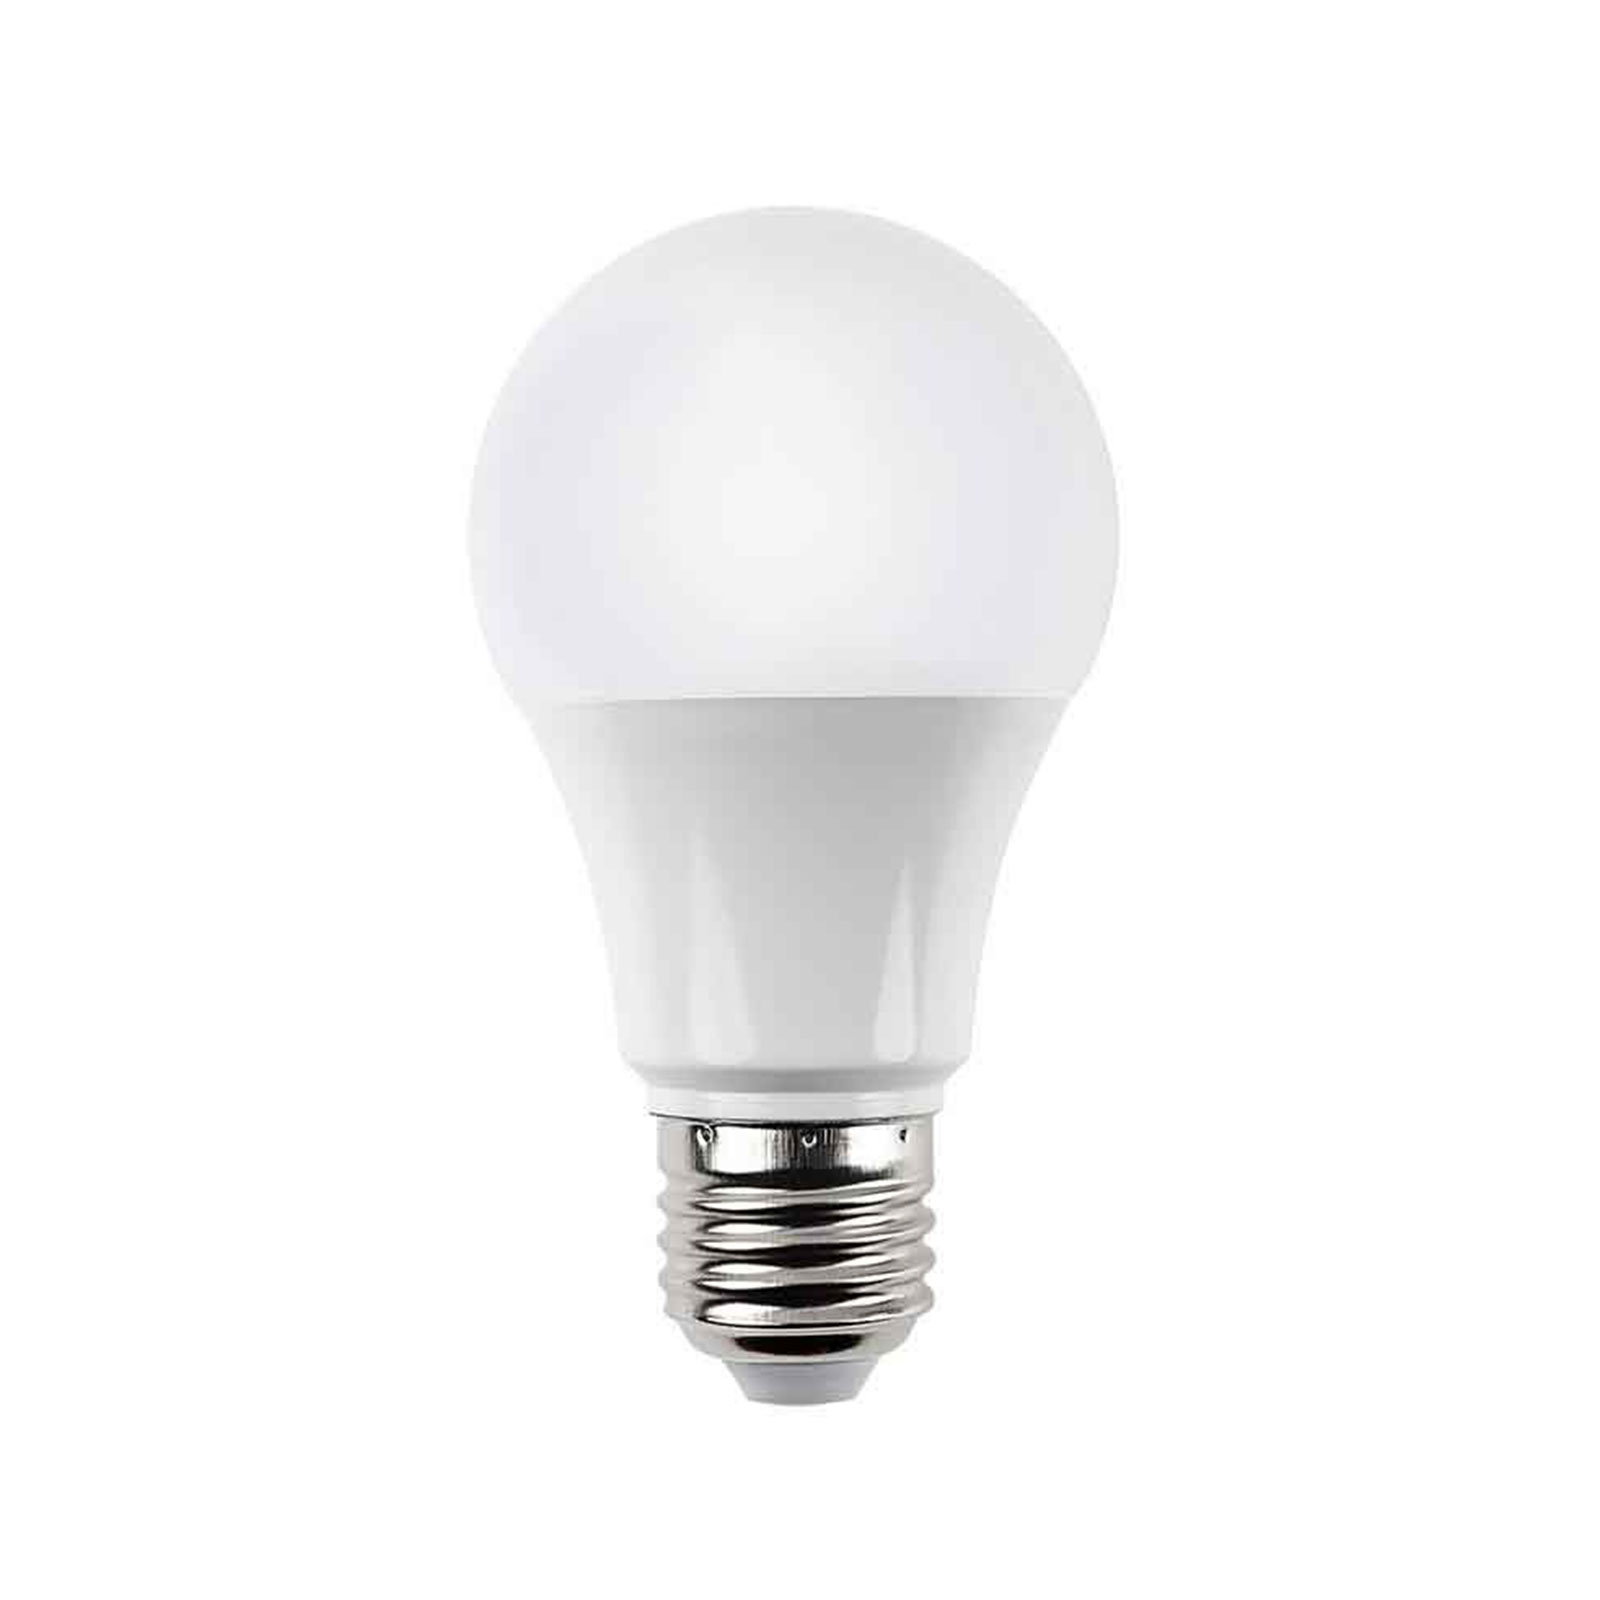  محصول جدید کالای برق الکترینو لامپ 12 وات مهتابی آلور 